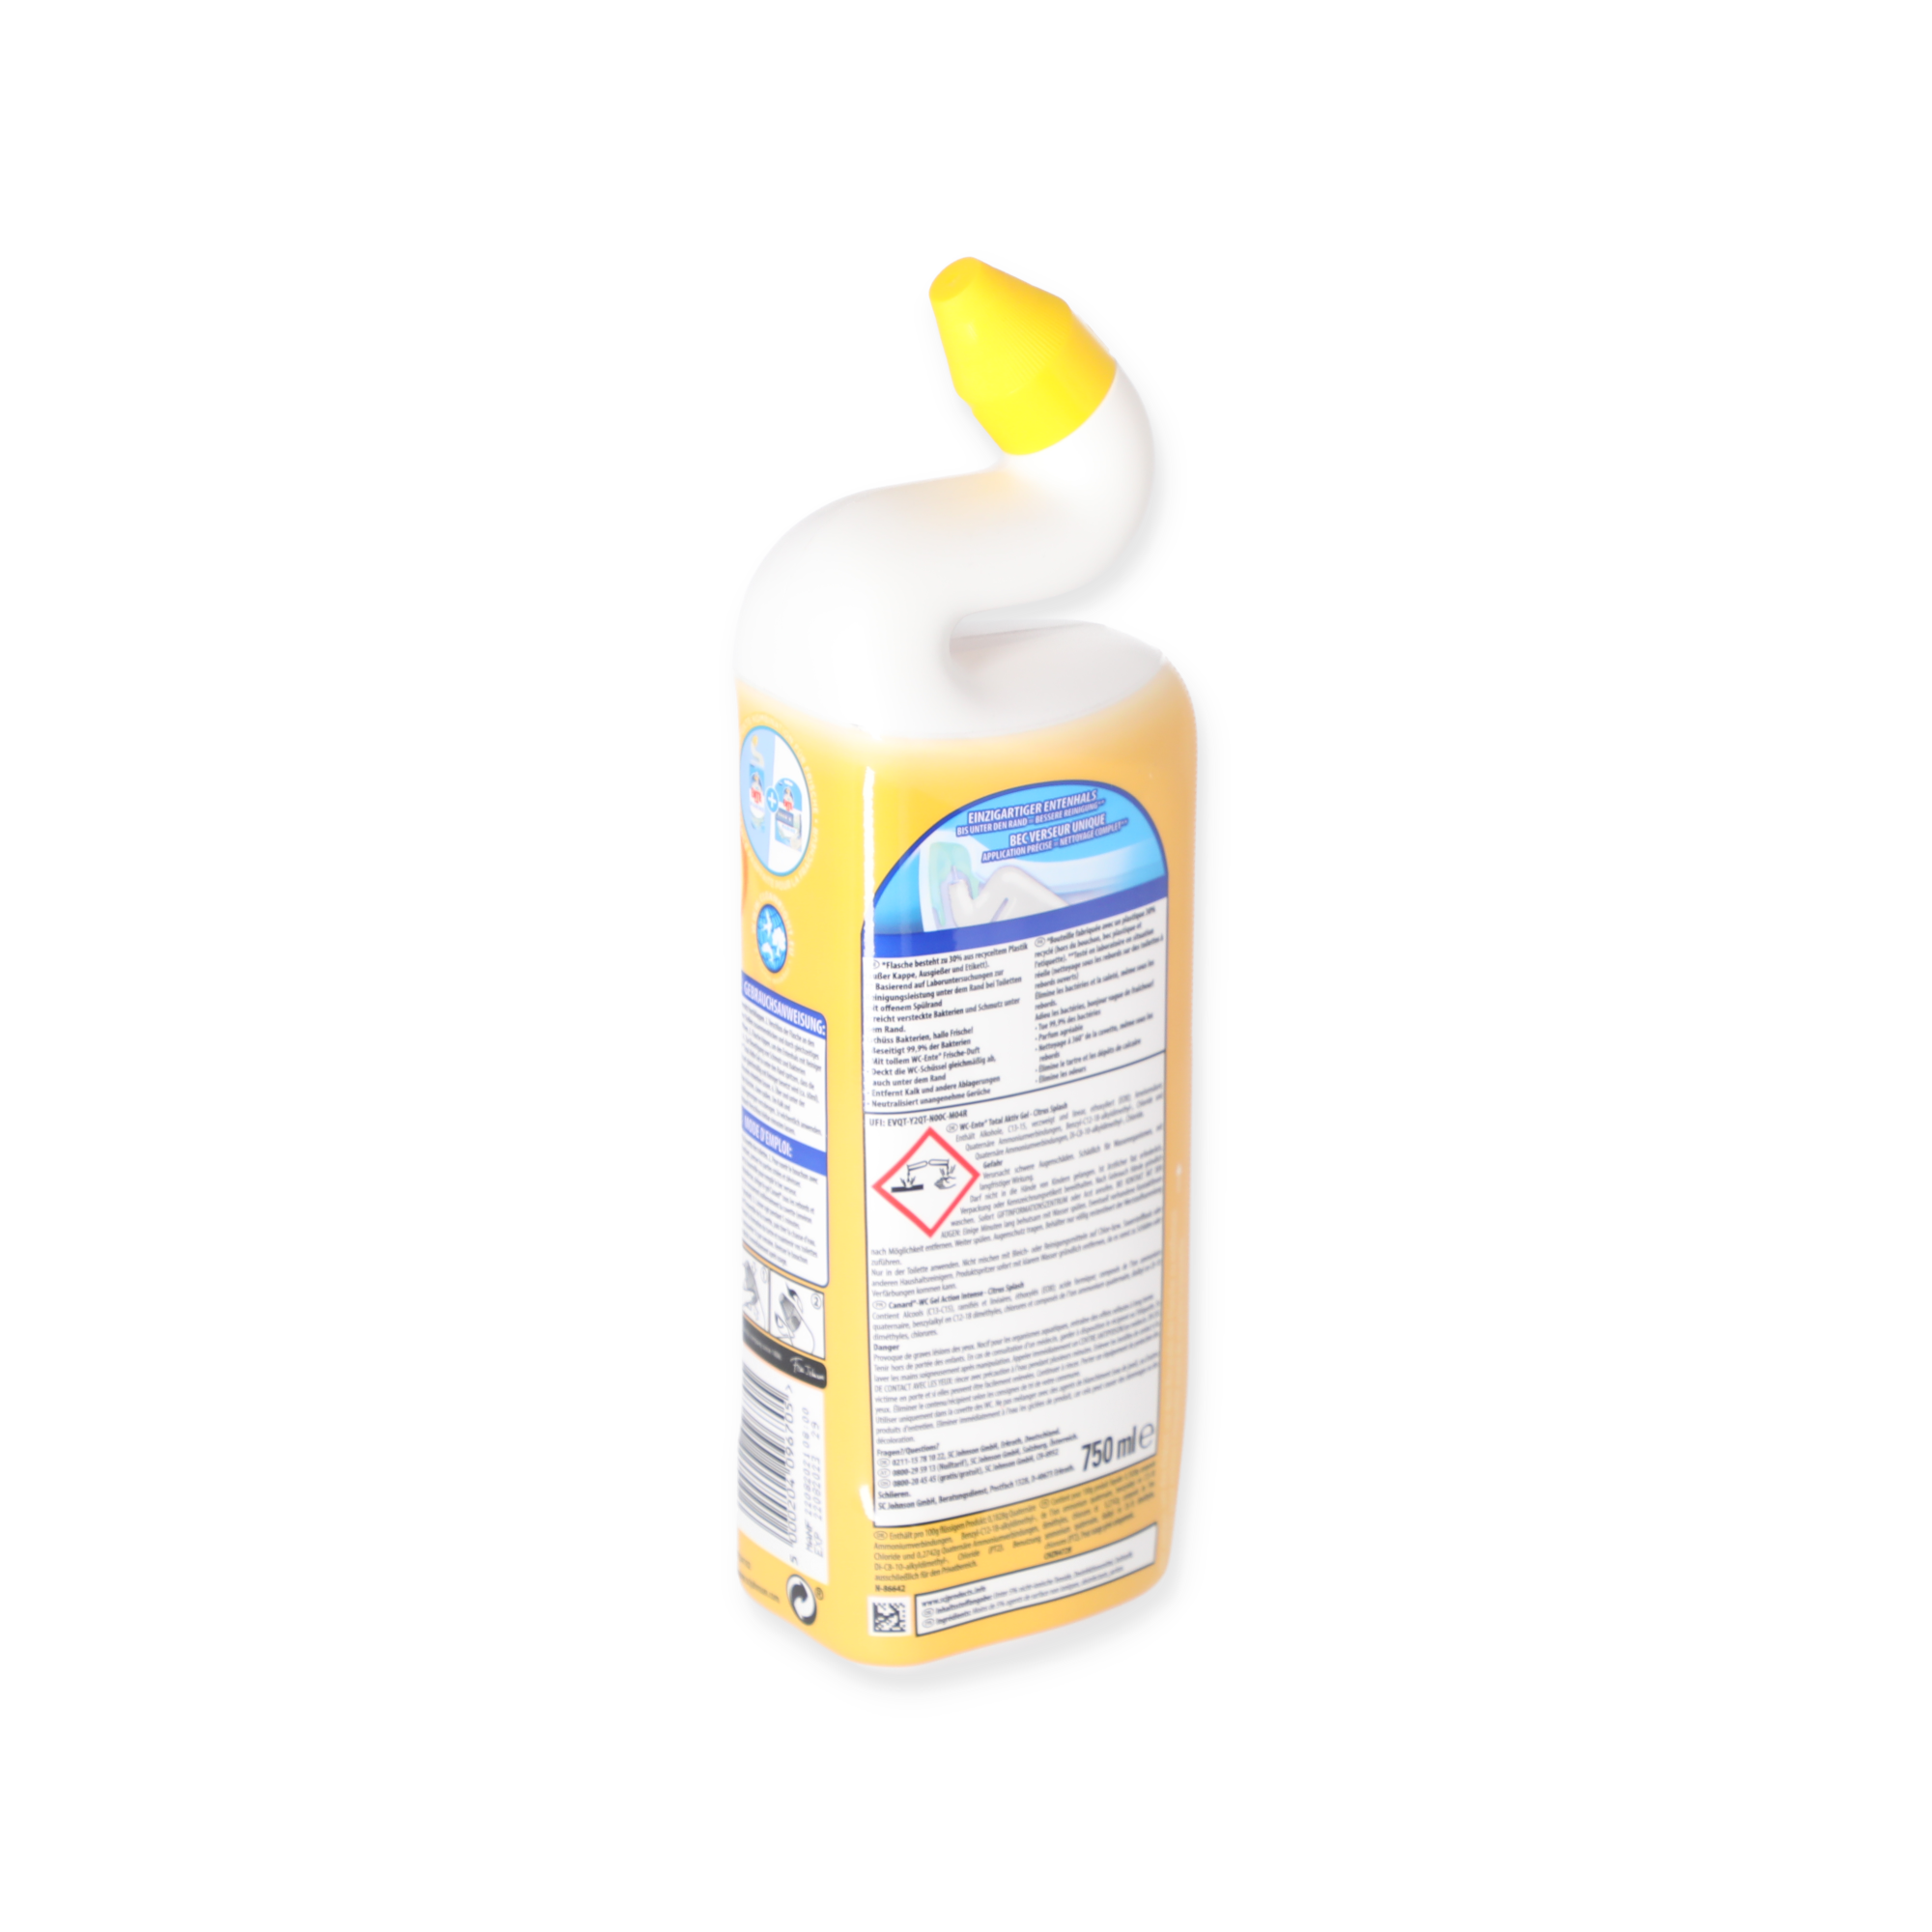 WC-Reiniger 'Total Aktiv Gel' Citrus Splash 750 ml + product picture